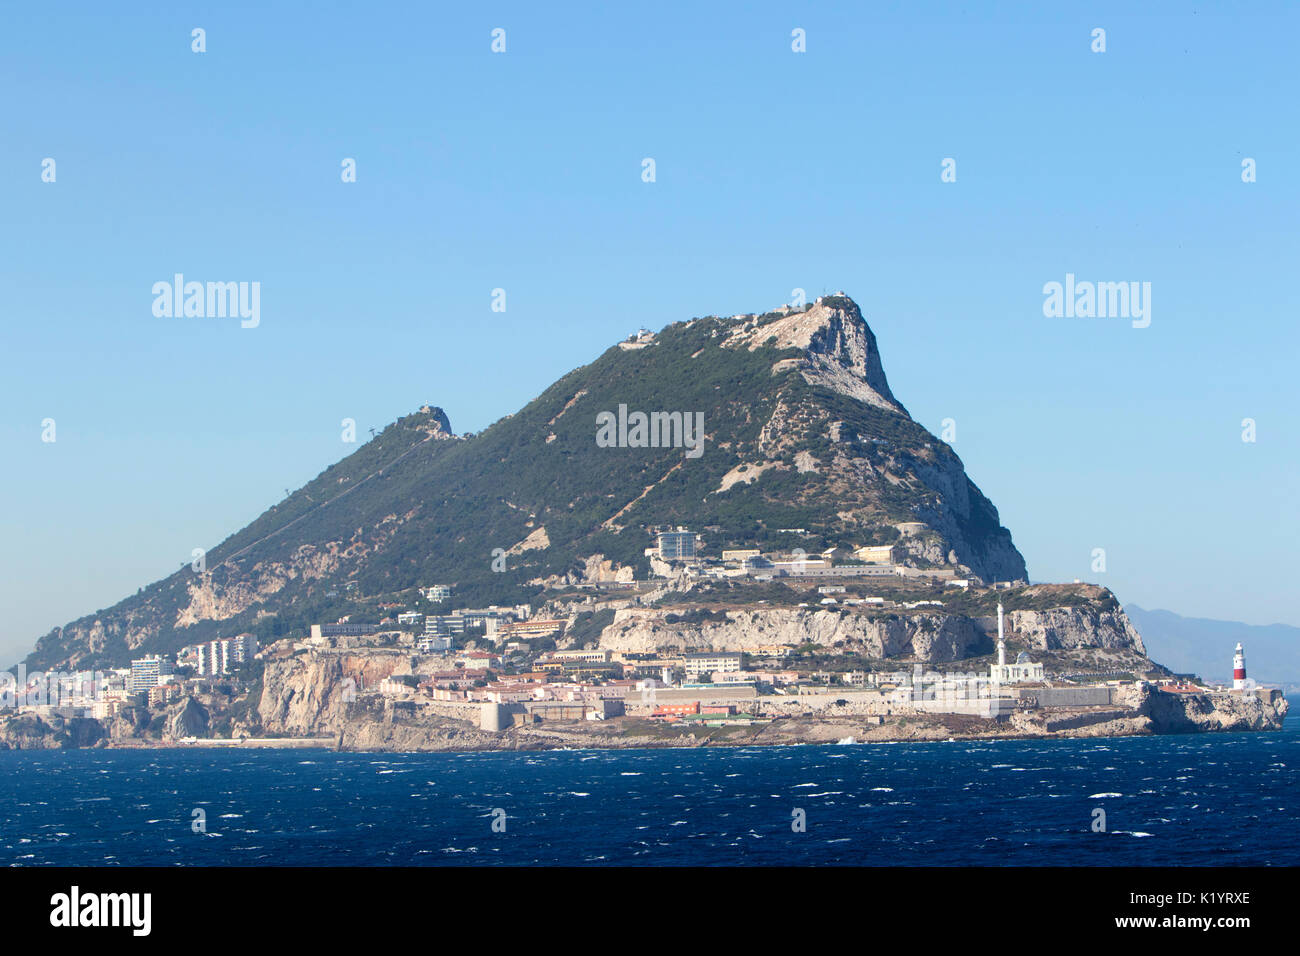 La Rocca di Gibilterra monolitico promontorio calcareo situato in British Overseas territorio di Gibilterra nella Penisola Iberica Foto Stock